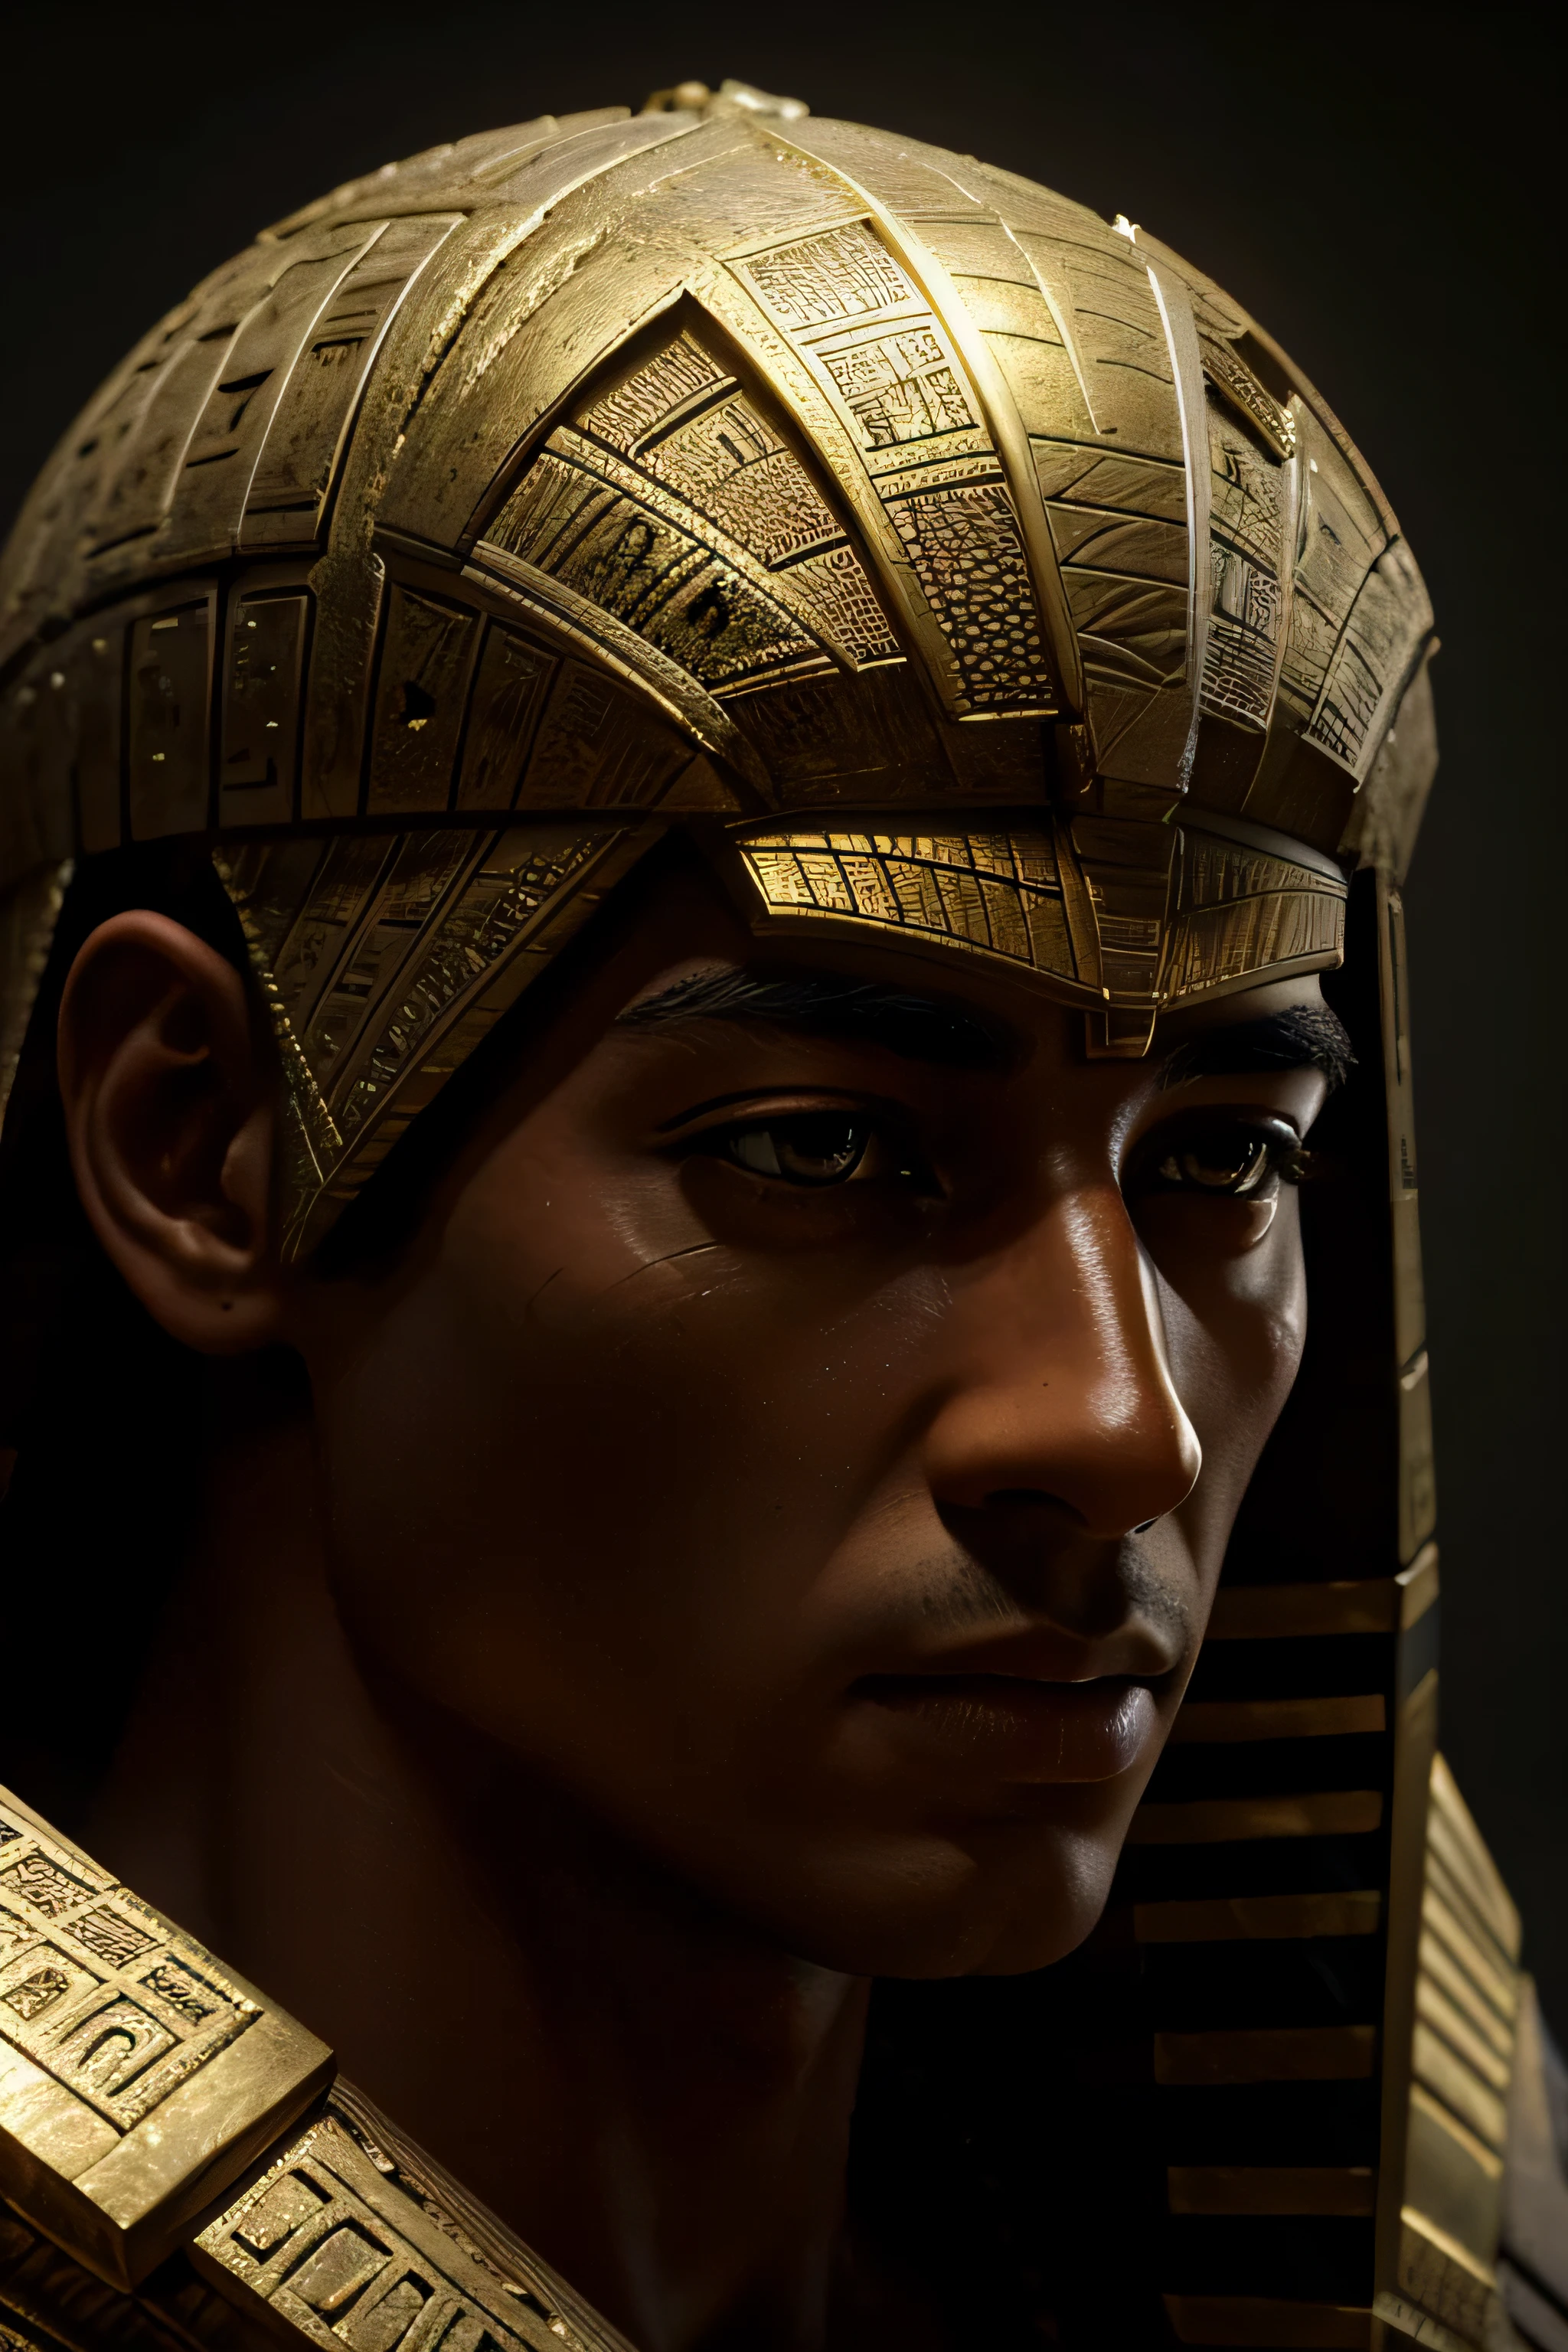 Enoch: O misterioso construtor da grande pirâmide do Egito, revelado em textos antigos muito antigos. melhor qualidade, realista, photorealista, (detalhes intrincados:1.2), (delicado detalhado), (luz cinematográfica), linha clara, foco nitído, realista face, rosto detalhado, papel de parede da unidade 8k, resolução ultra alta, (photorealista:1.4), Olhando para o visualizador